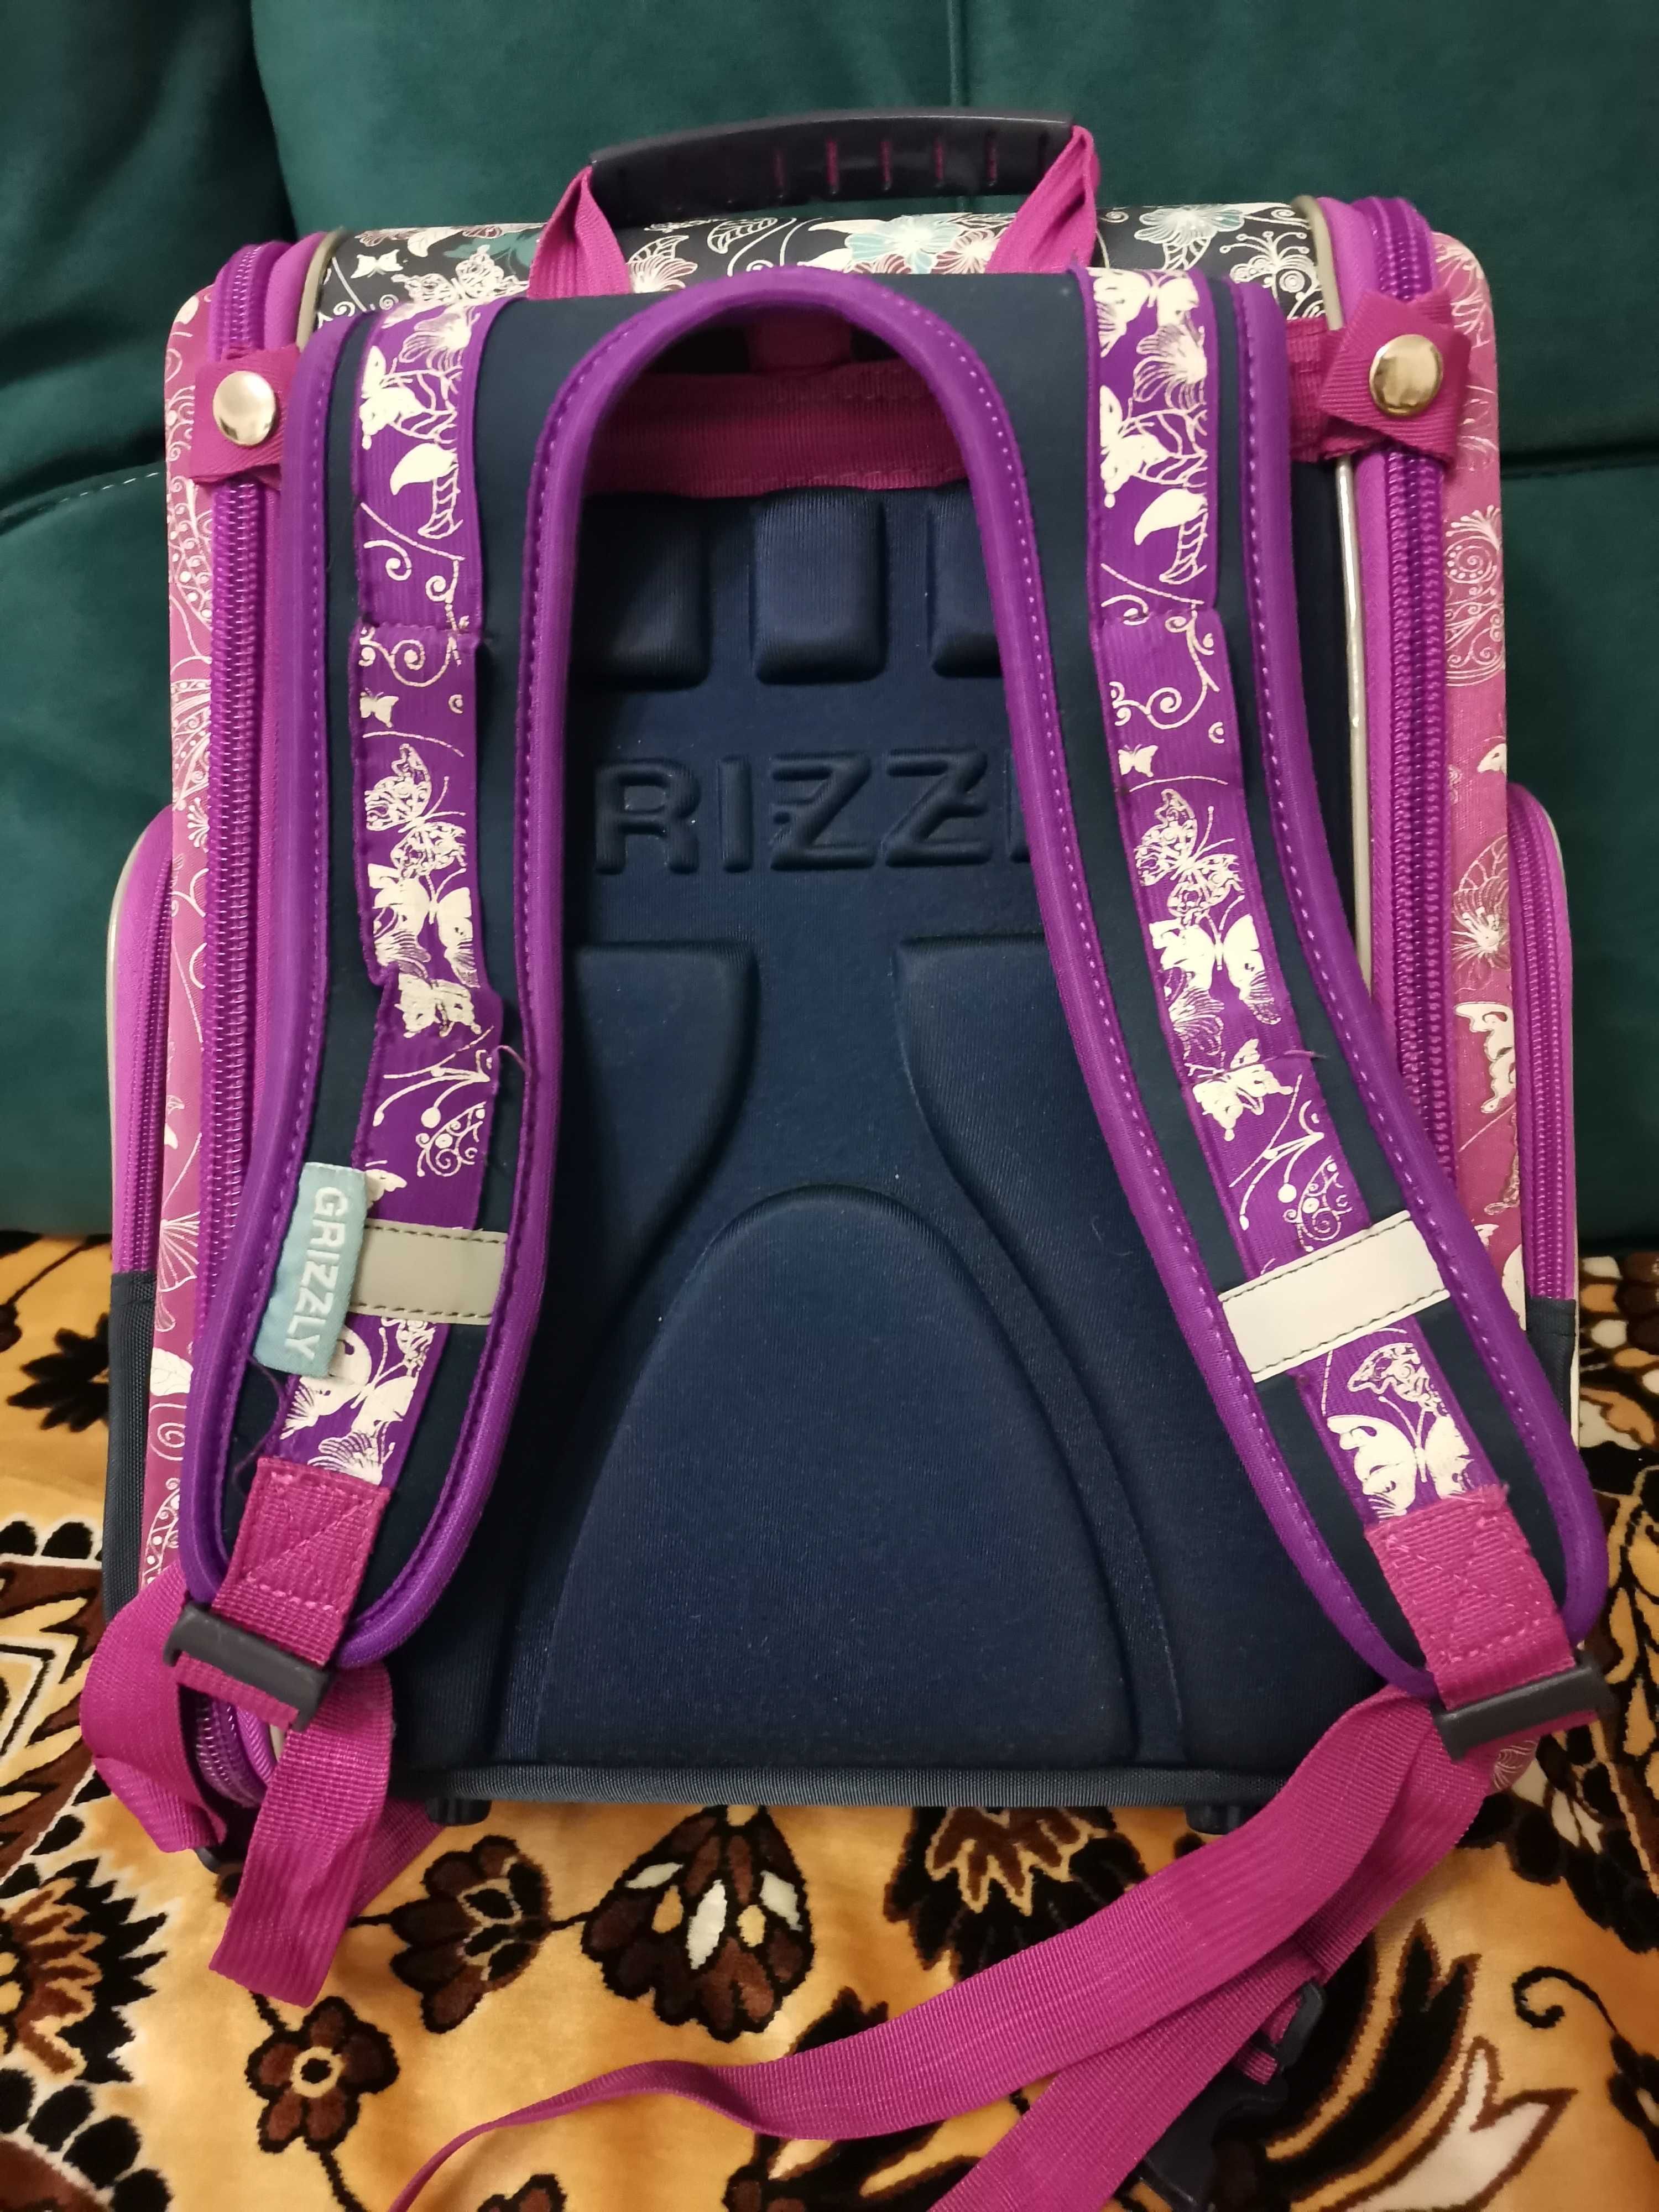 Продам ОРИГИНАЛЬНЫЙ школьный рюкзак  ФИРМЫ  " Grizzly ", не китайский